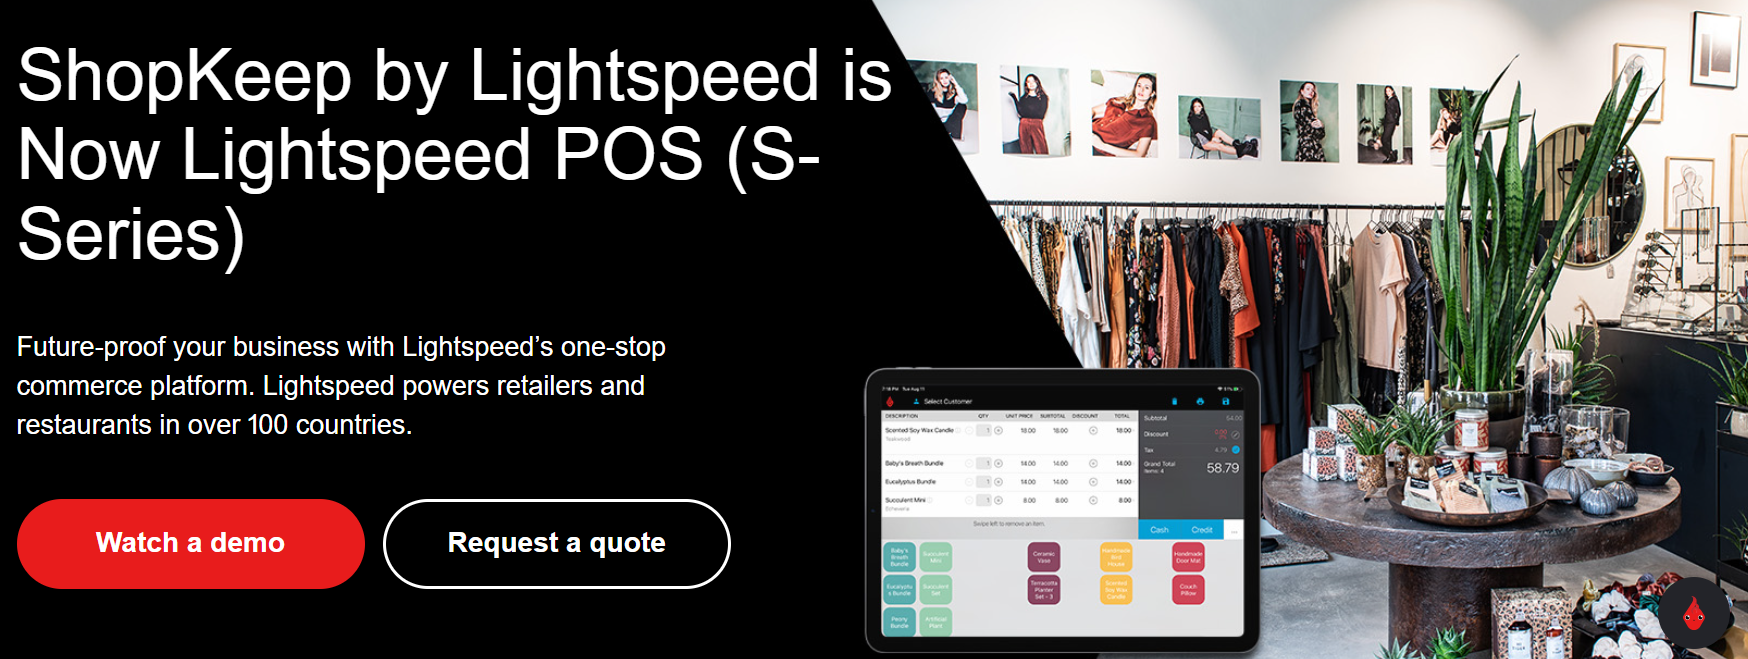 LightSpeed POS (ShopKeep) Platform